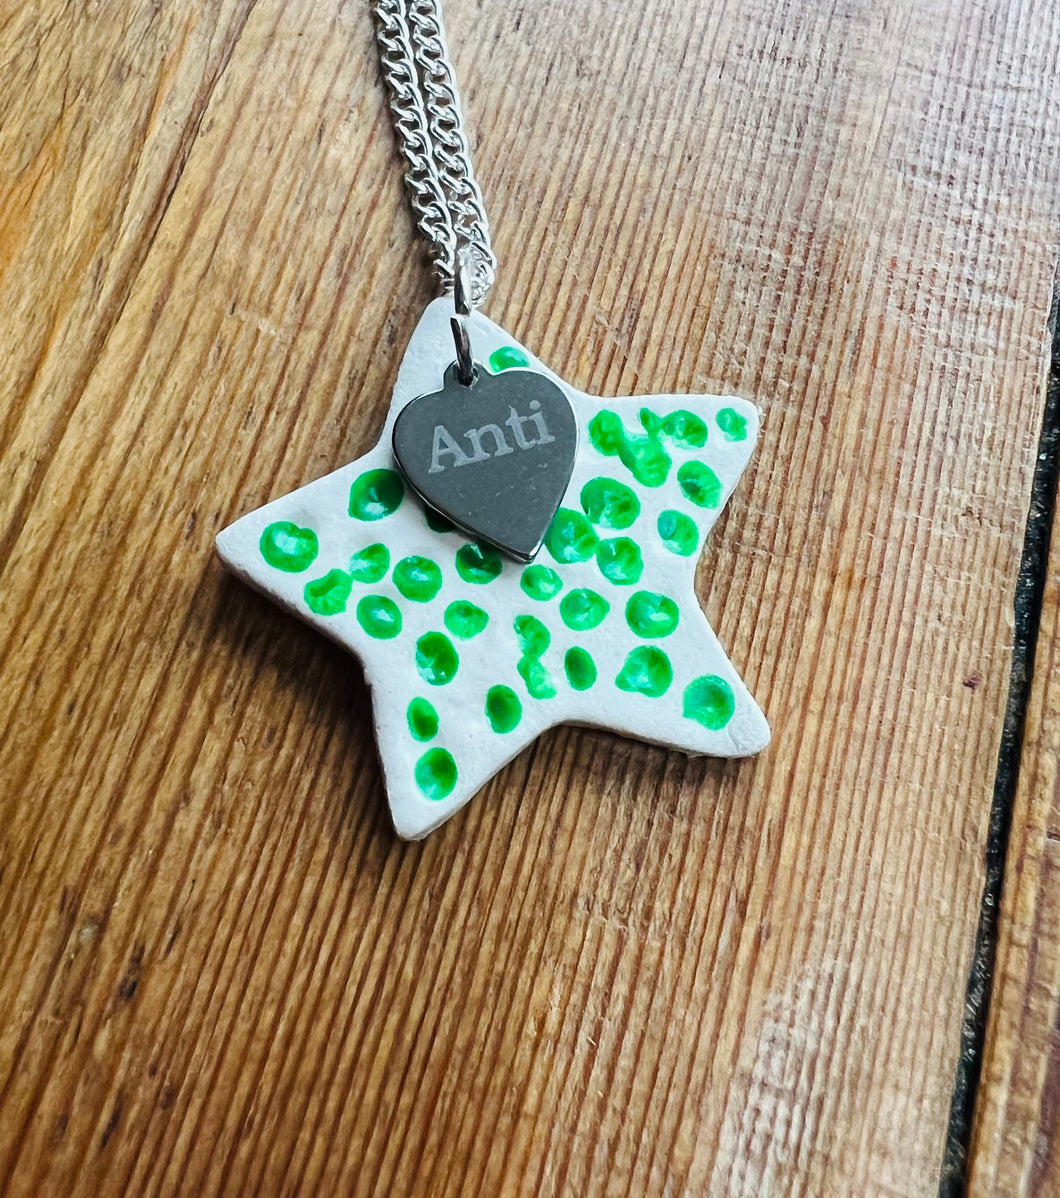 Mwclis seren gwyrdd Anti / Anti green star necklace